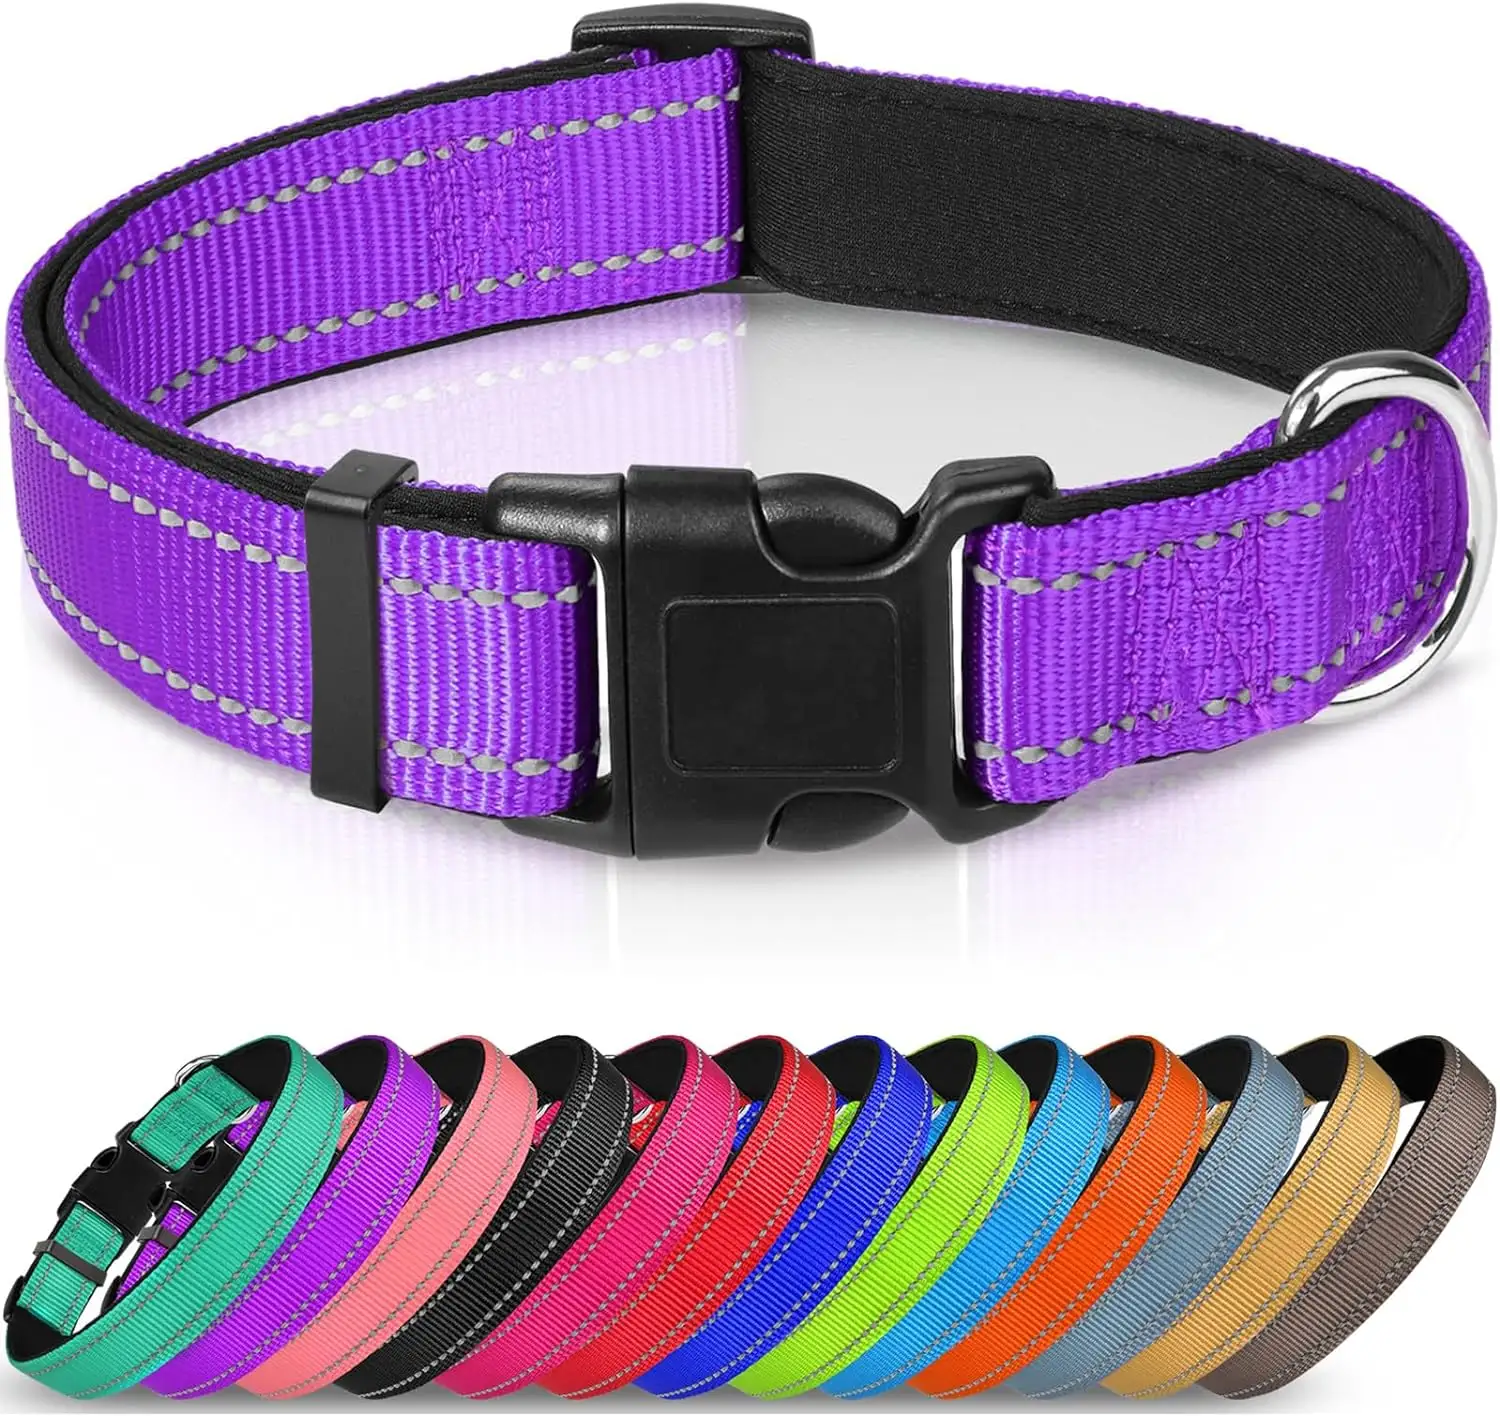 Desain asli grosir kerah anjing rami perusahaan kerah anjing rami dapat disesuaikan kerah anjing Hemp kerah dan tali Set warna ungu